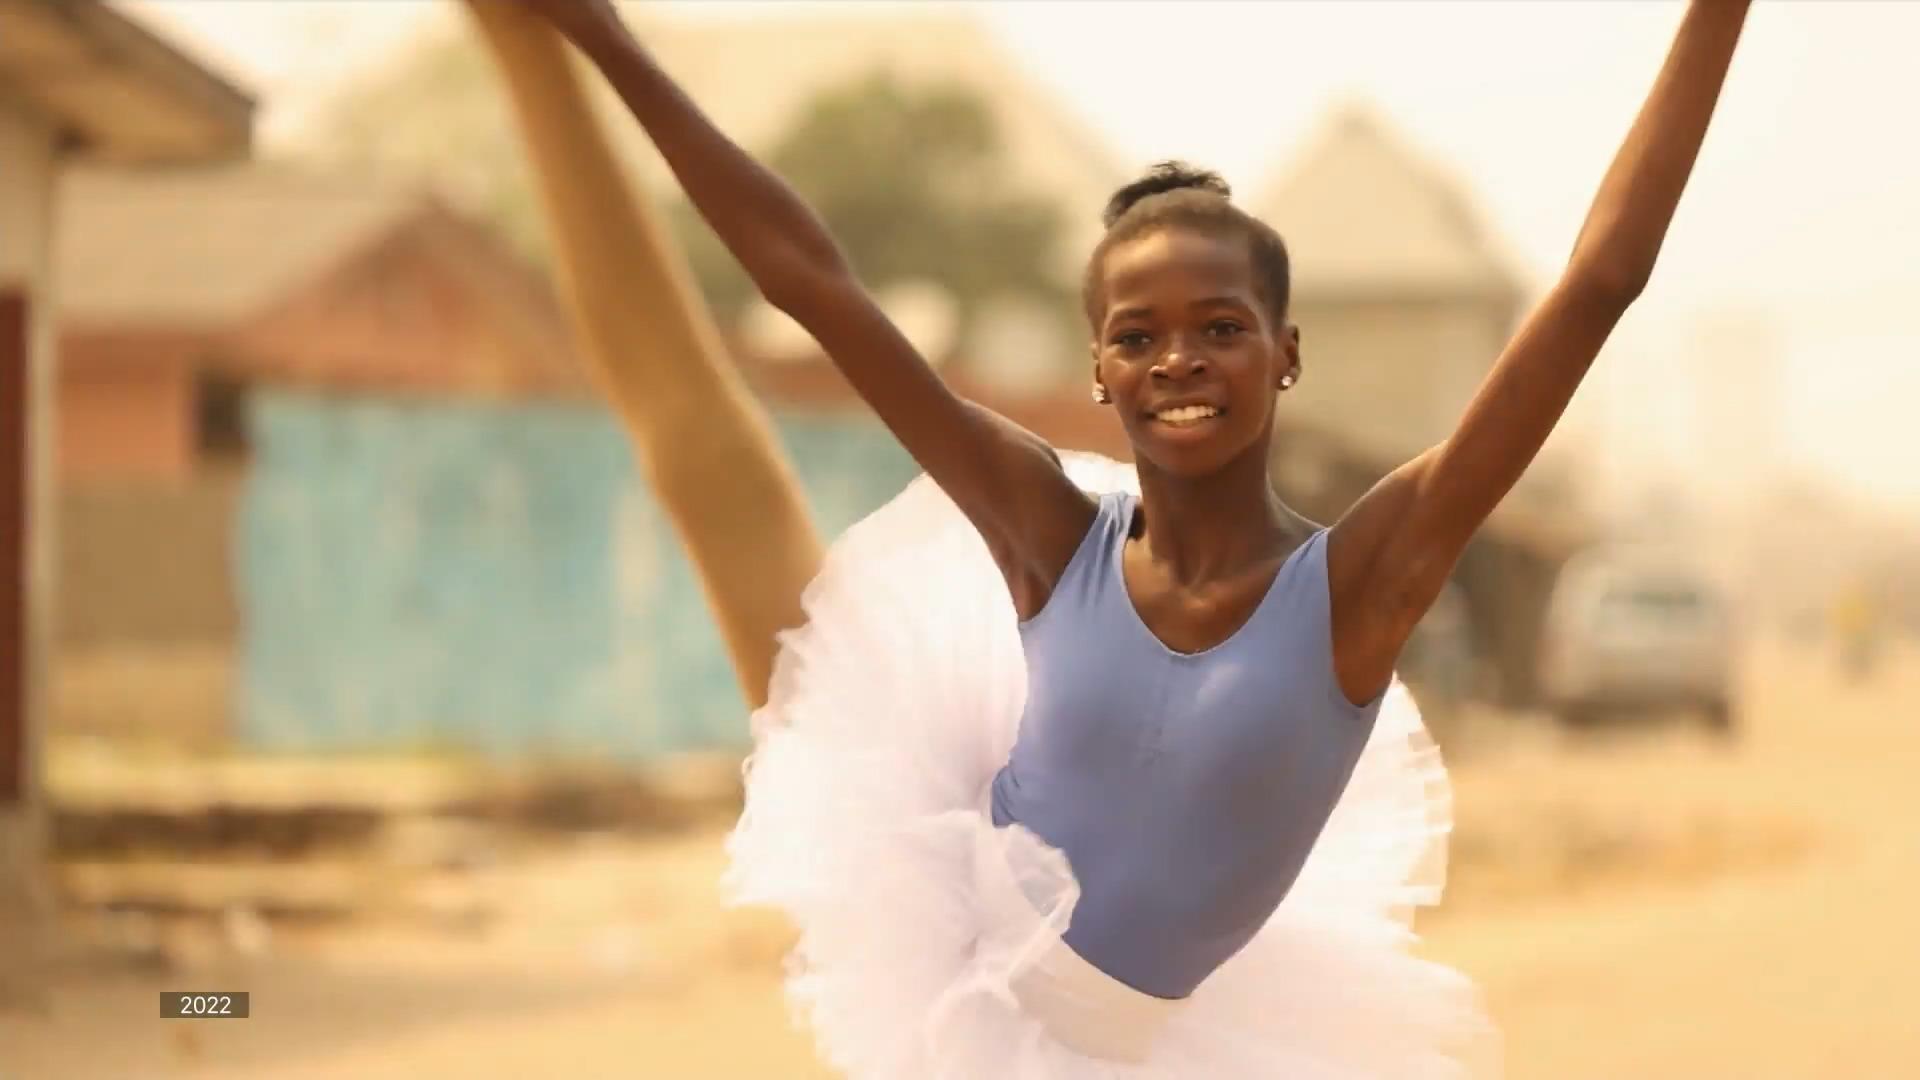 Das Ballett-Talent aus einem Slum in Nigeria Precious Duru